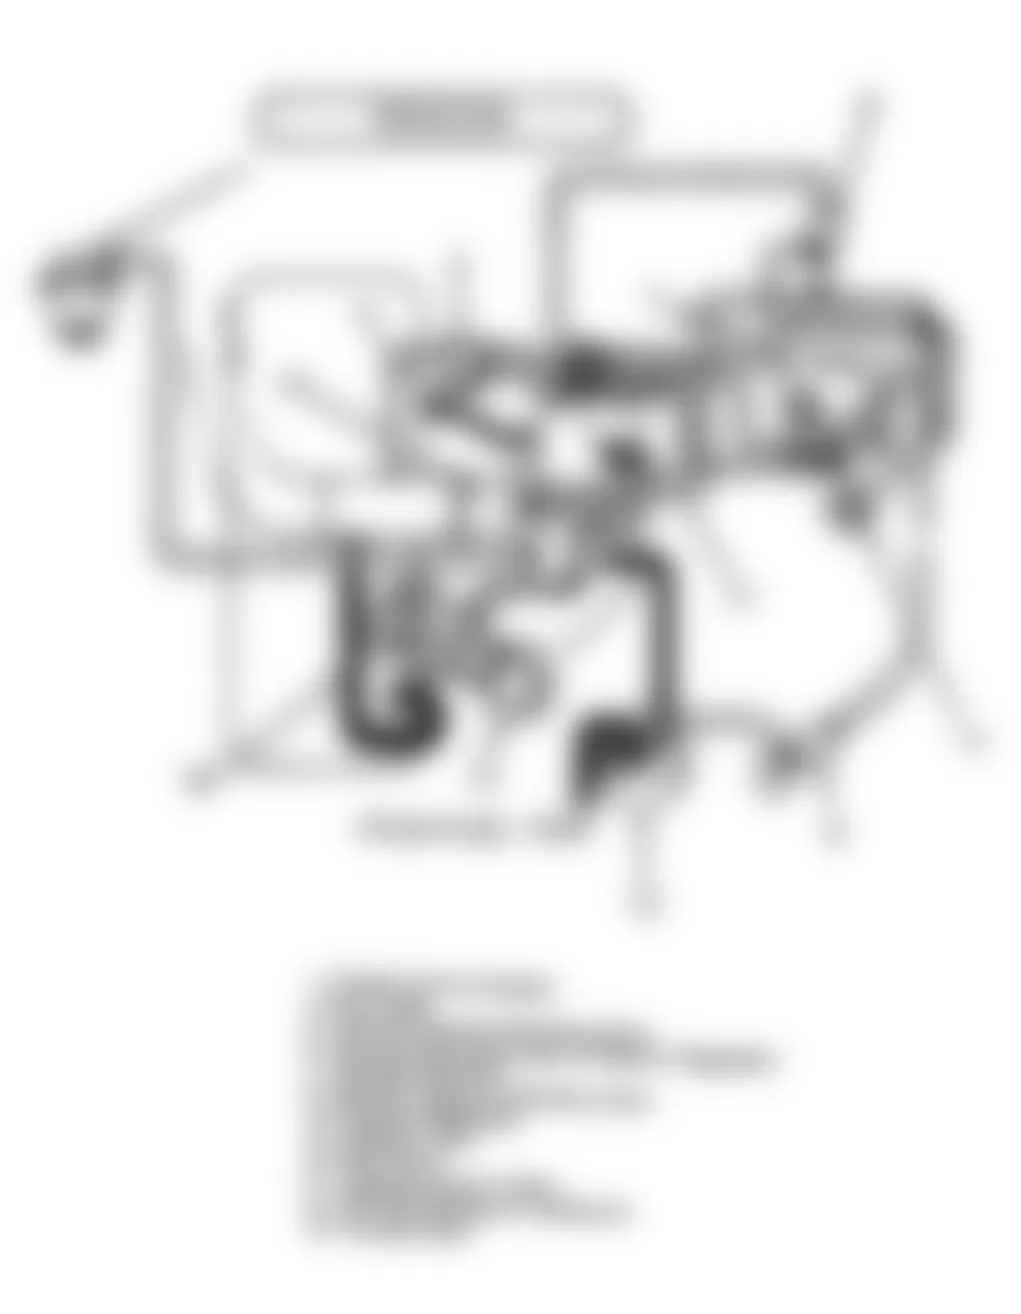 Isuzu Amigo S 1990 - Component Locations -  Code 33: Circuit Diagram Fuel Injector